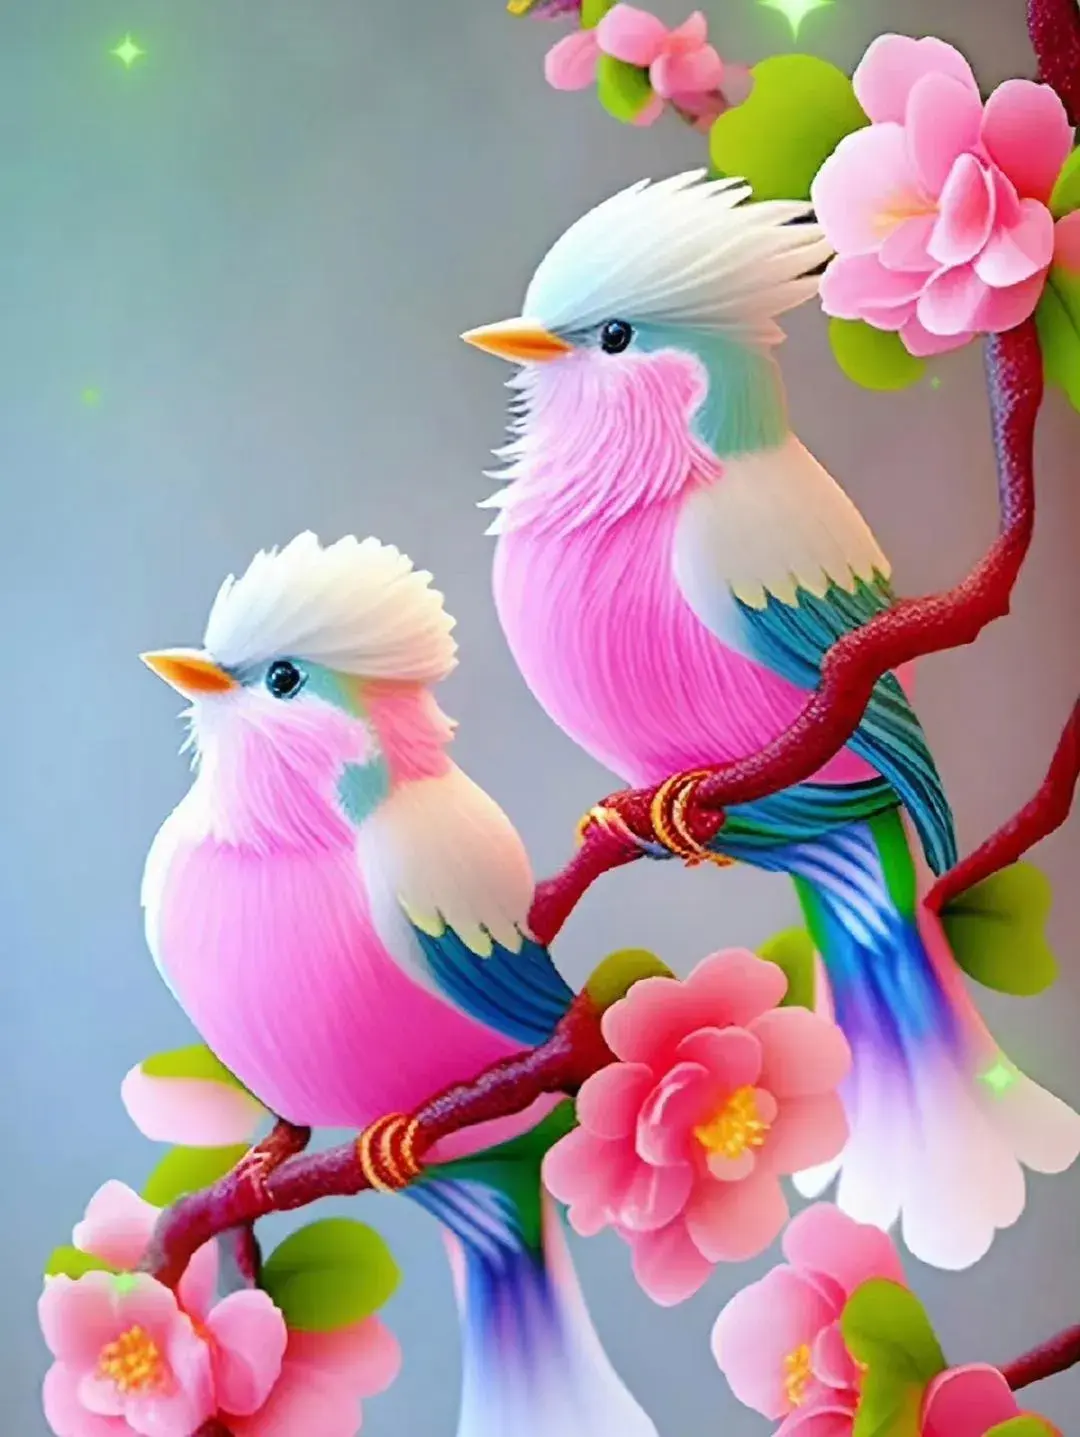 95漂亮的壁纸95 两只小鸟,在树枝上静静的欣赏着美丽的花朵和绿叶